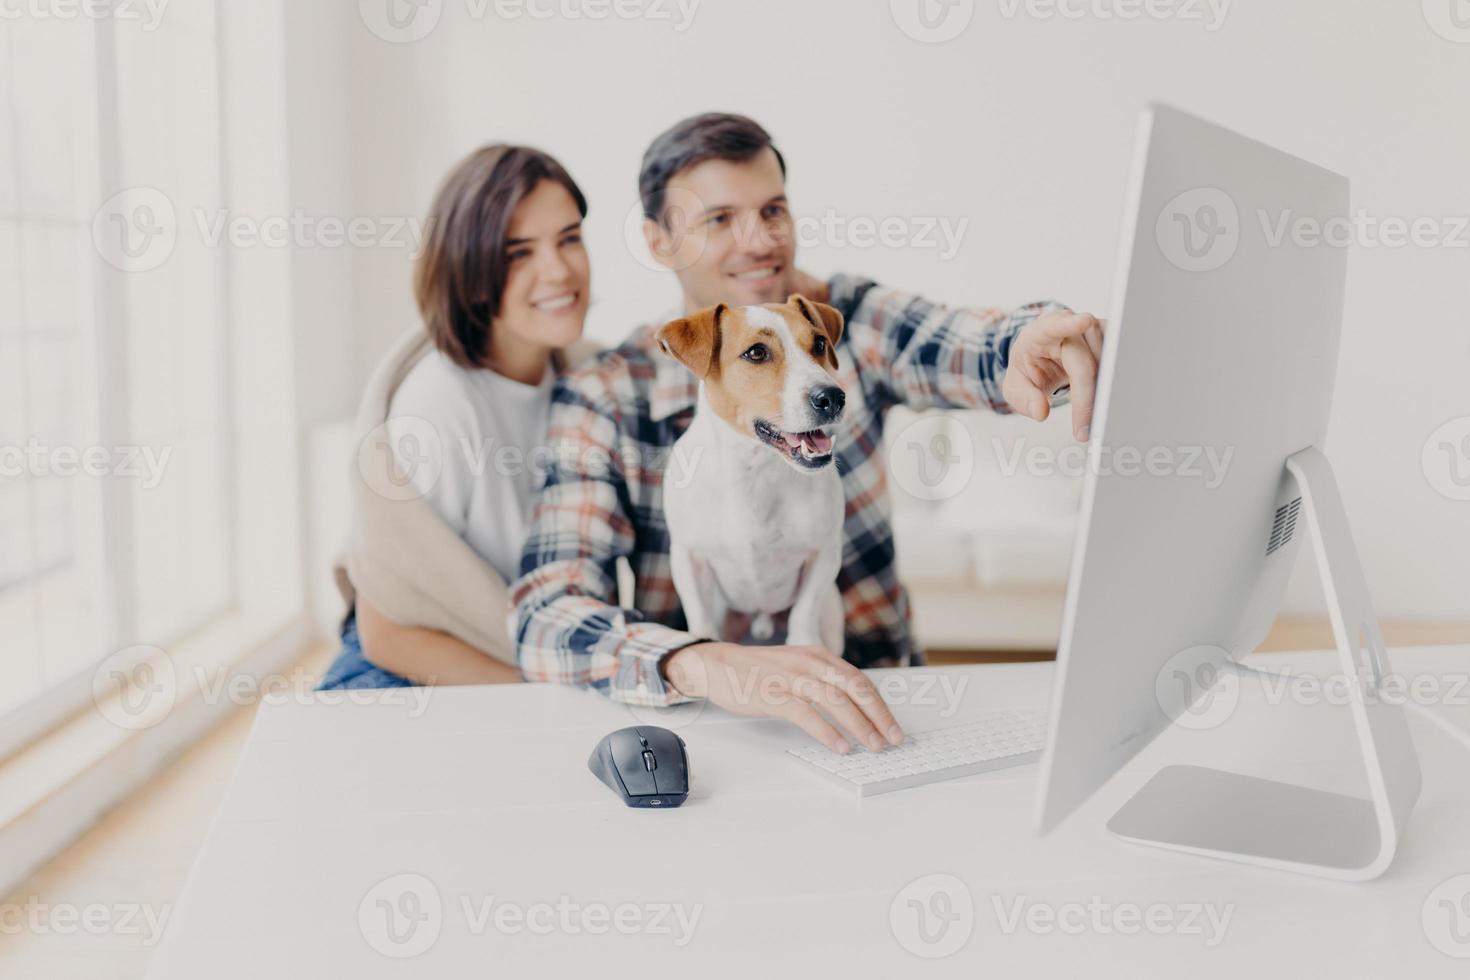 jovem e homem satisfeitos assistem ao conteúdo do computador